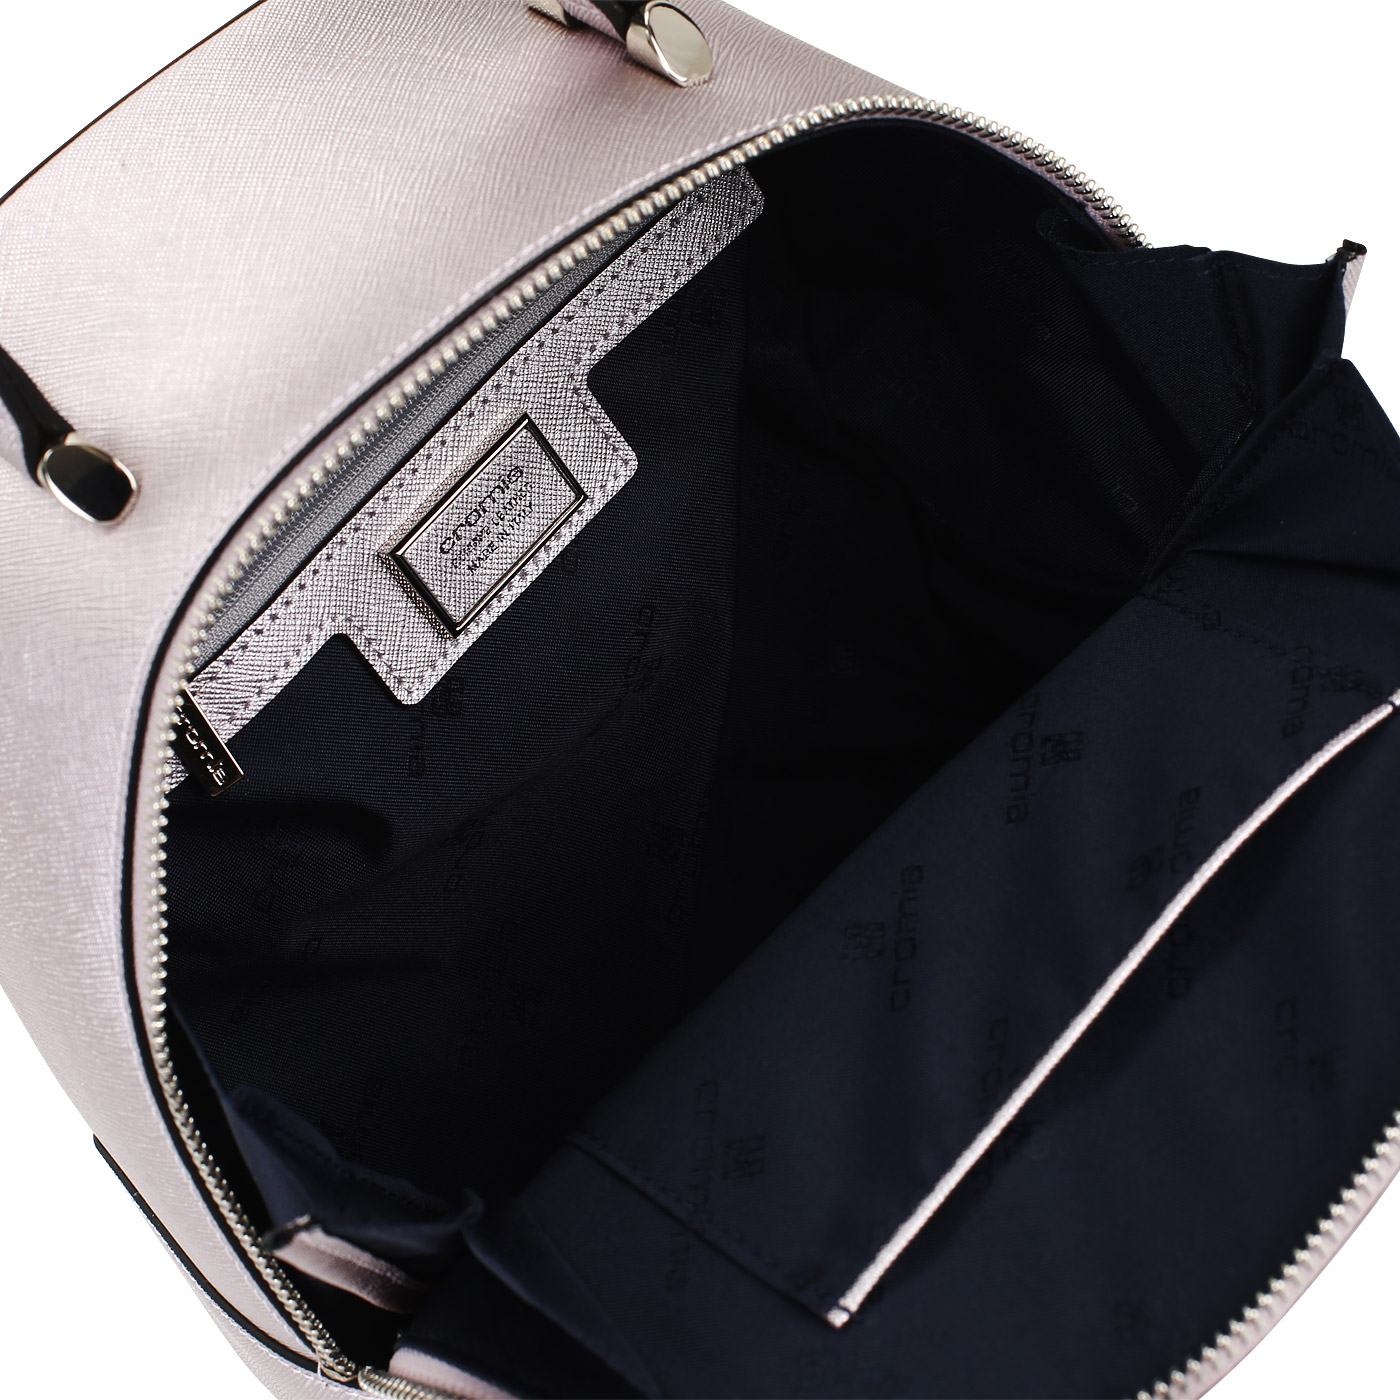 Сафьяновый рюкзак на молнии Cromia Perla